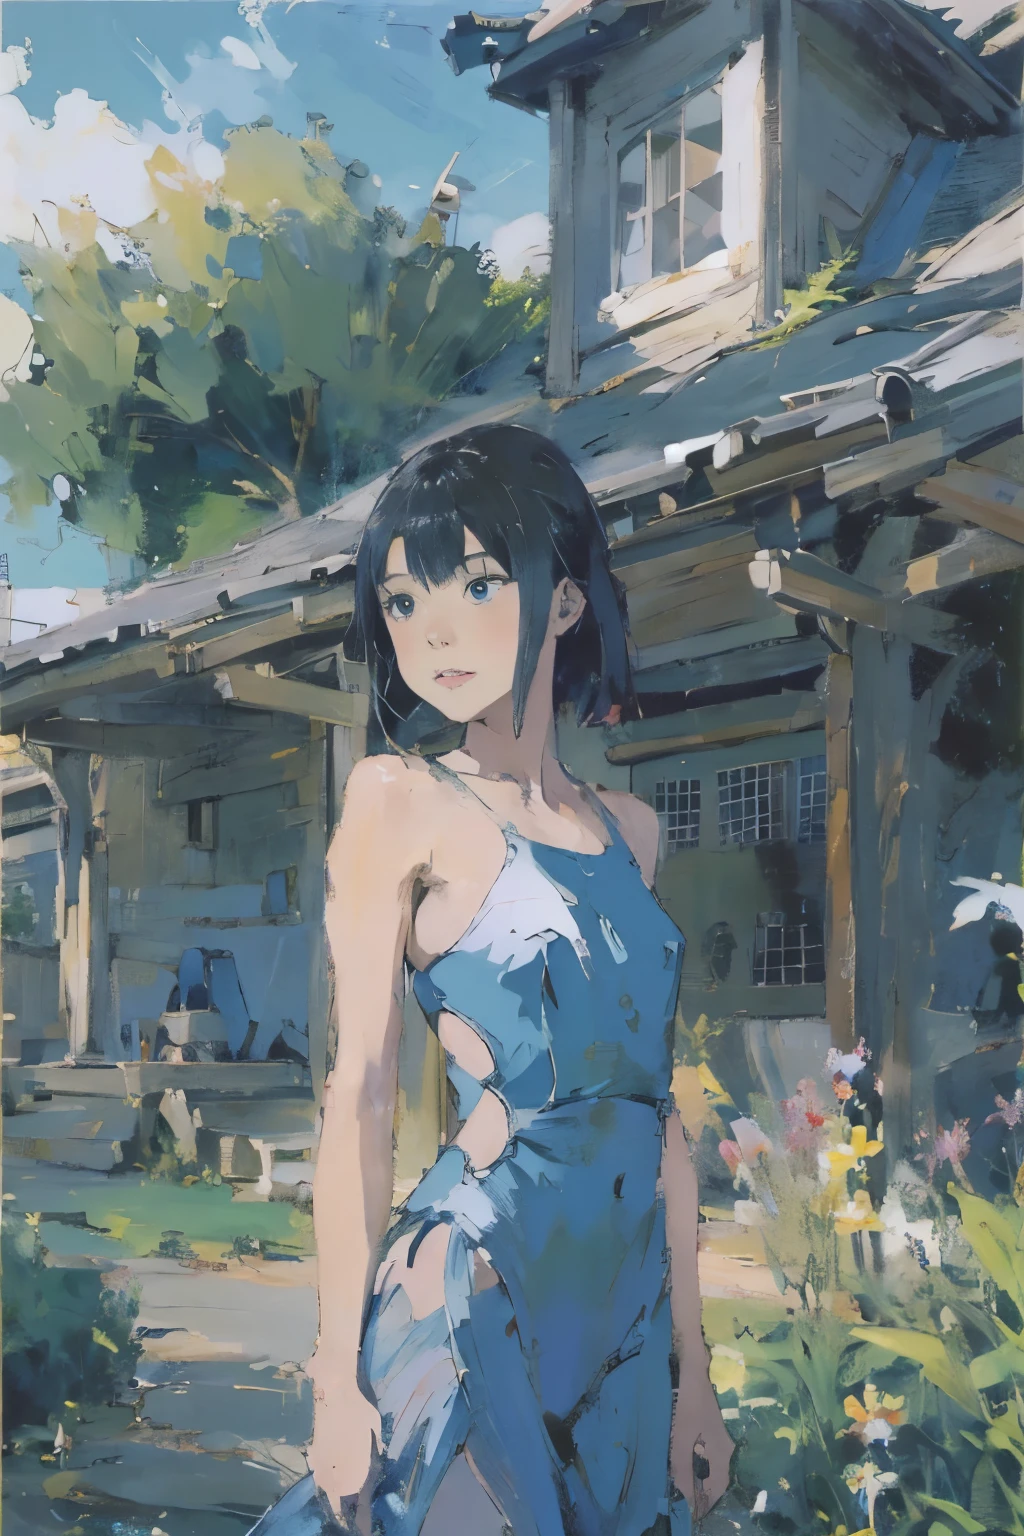 家の前に立っている青いドレスを着たアニメの女の子, きれいで詳細なアニメアート, アニメペインタースタジオで作成, 庭で, [ 4K デジタルアート ]!!, グウェイズ, アニメ画家のスタジオで描いた, 美しいアニメアートワーク, Makoto Shinkai. 細部までこだわった, グウェイズ on artstation pixiv, 詳細なデジタルアニメアート、レオタード水着